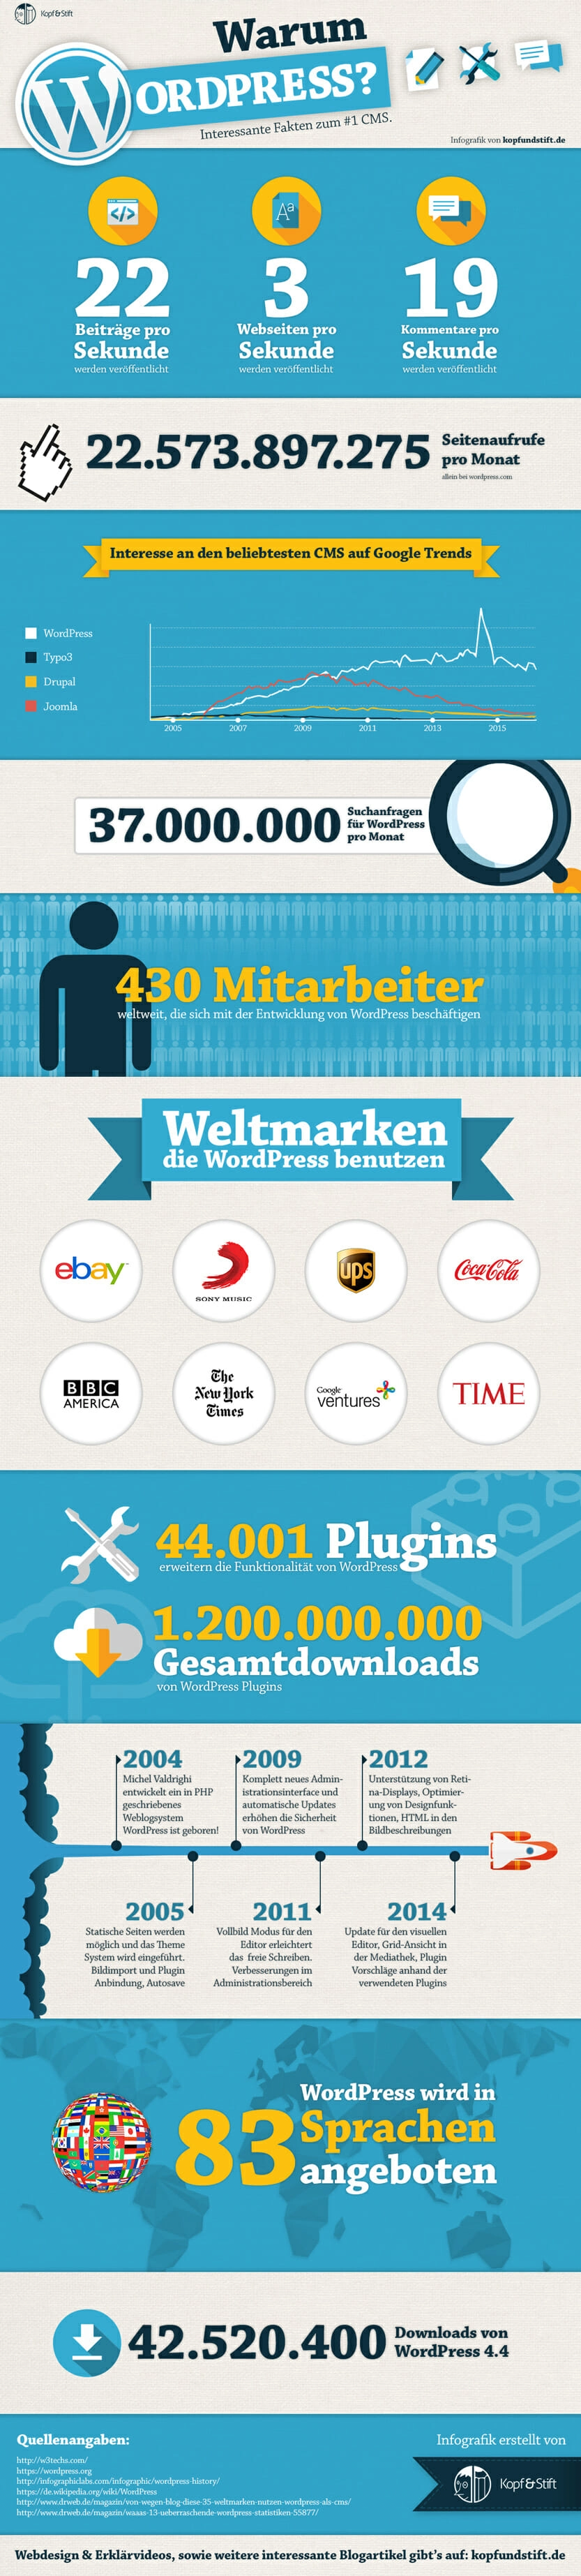 Warum Wordpress - diese WordPress Infografik zeigt die Beliebtheit des #1 CMS